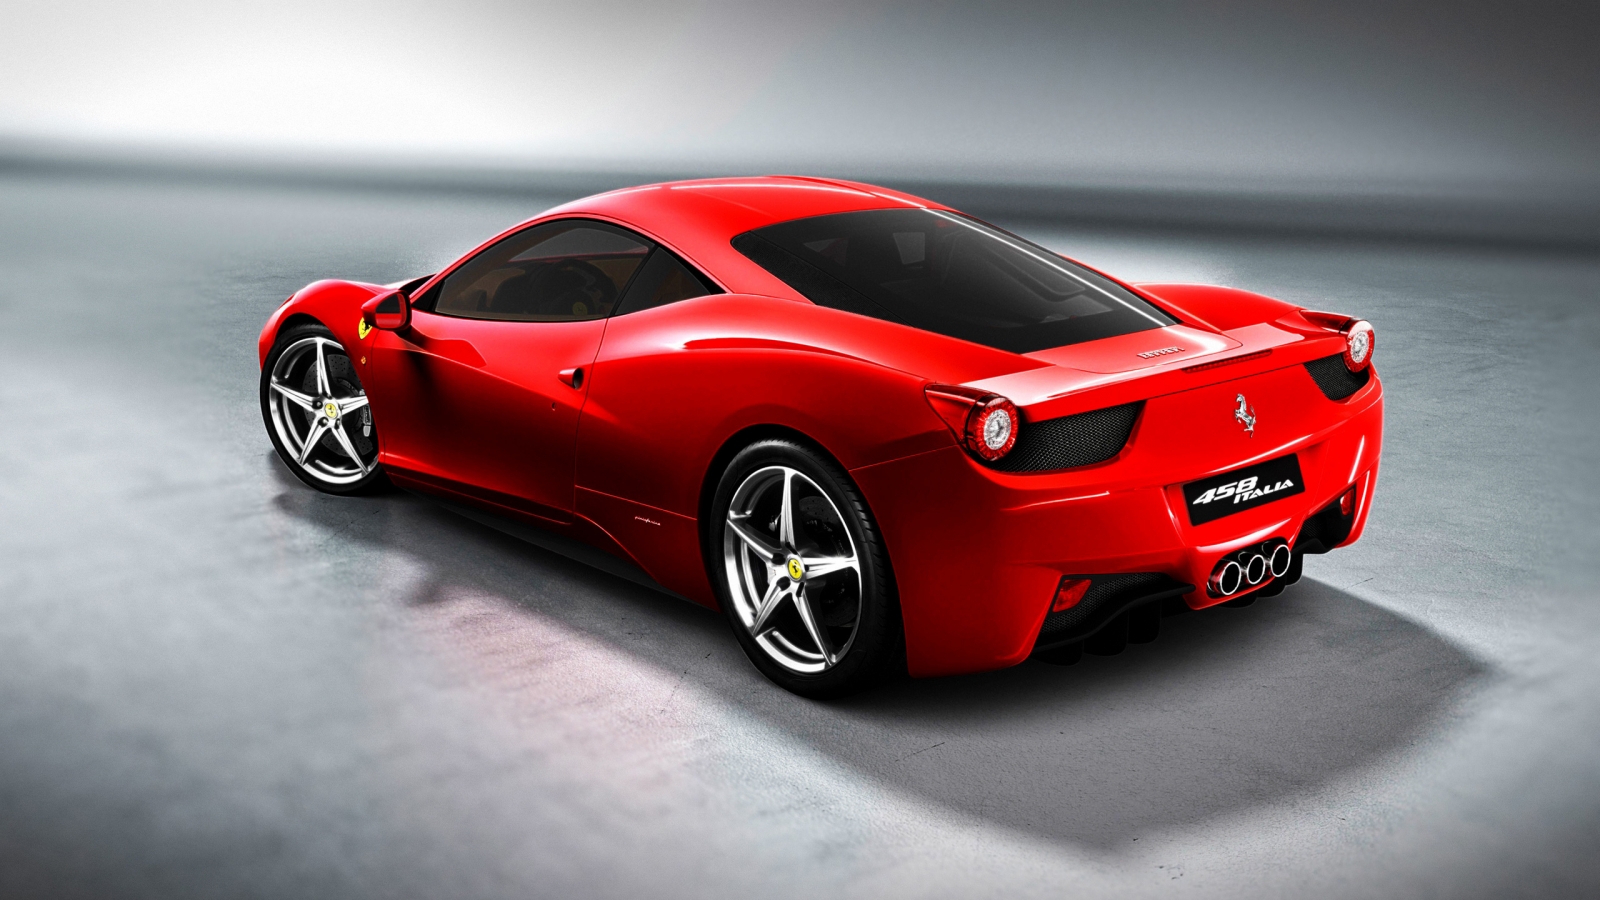 Ferrari 458 for 1600 x 900 HDTV resolution